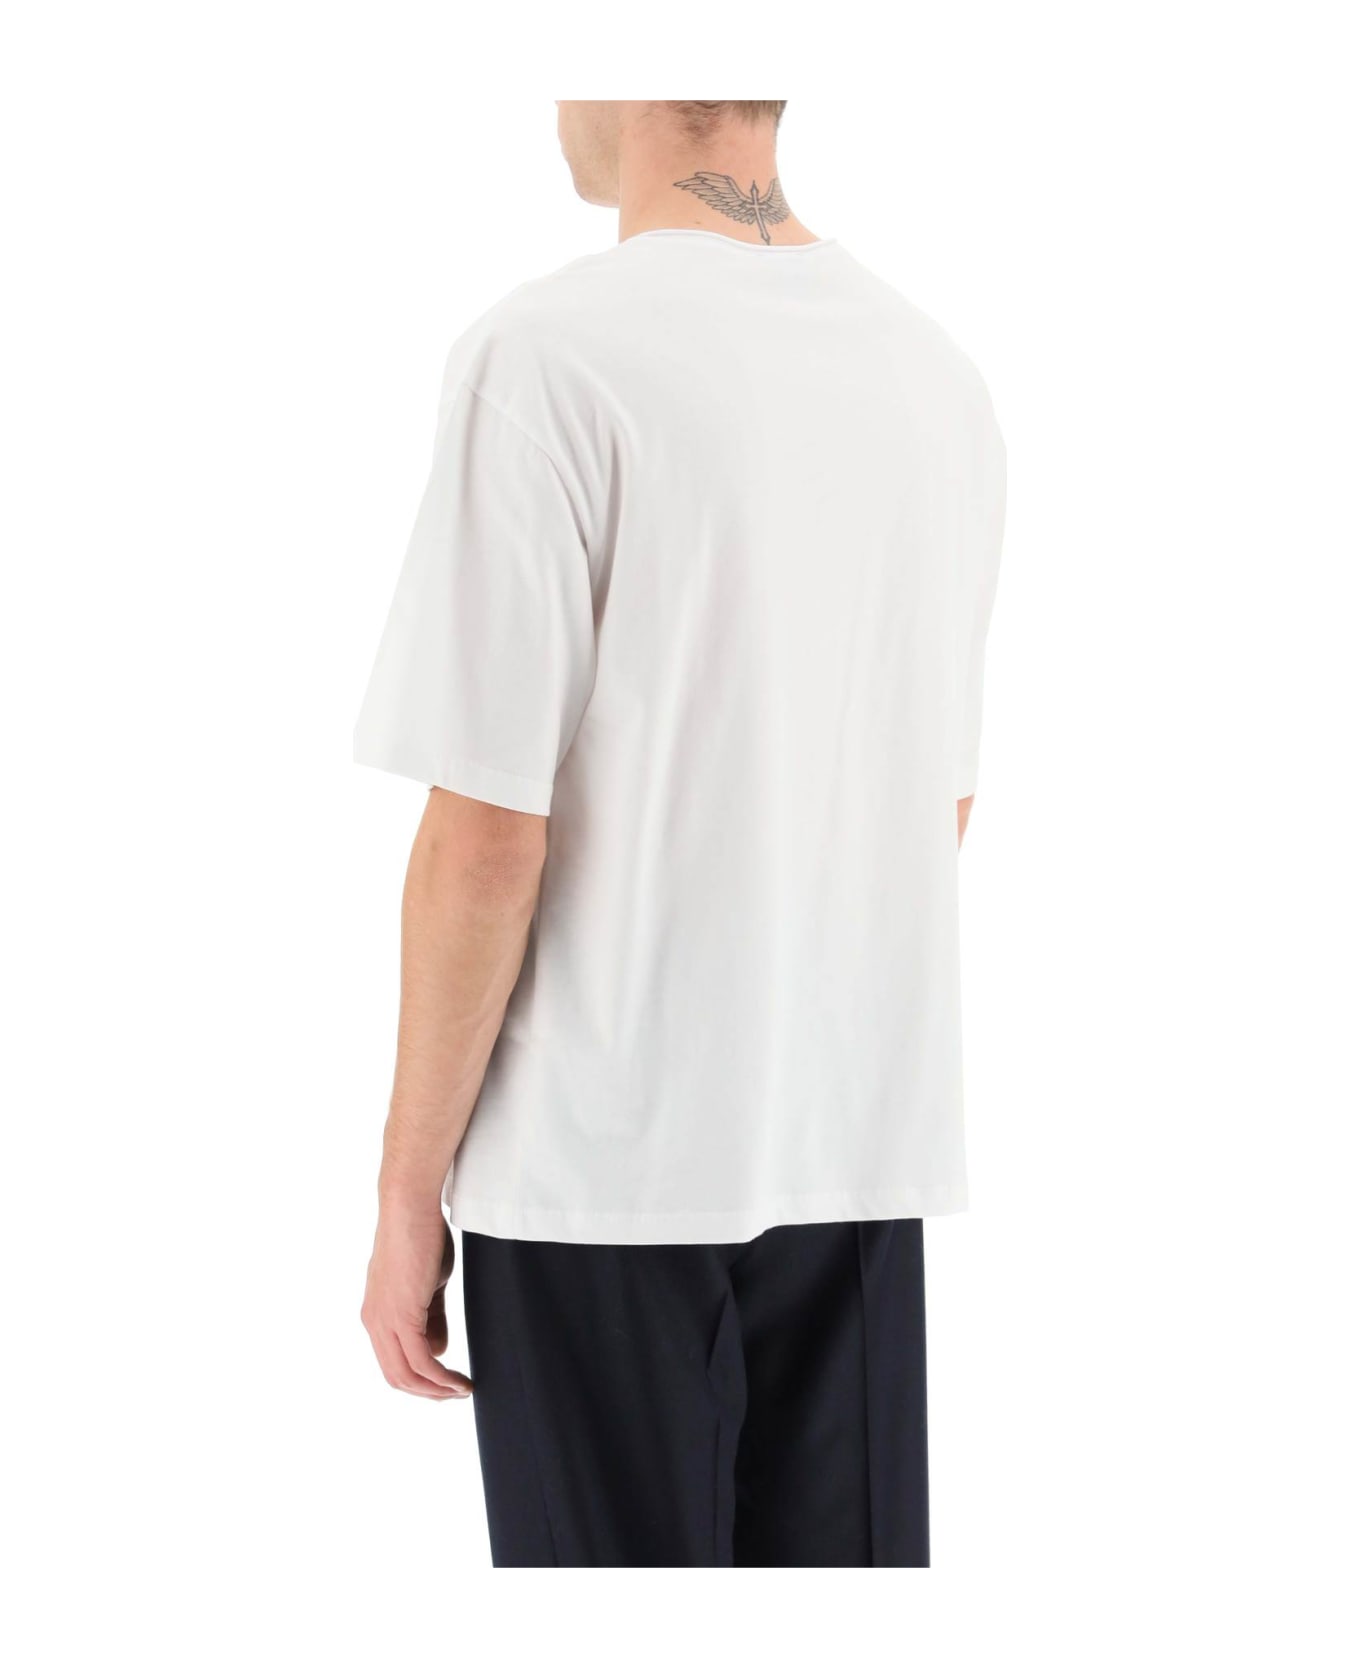 A.P.C. Jeremy T-shirt - White シャツ